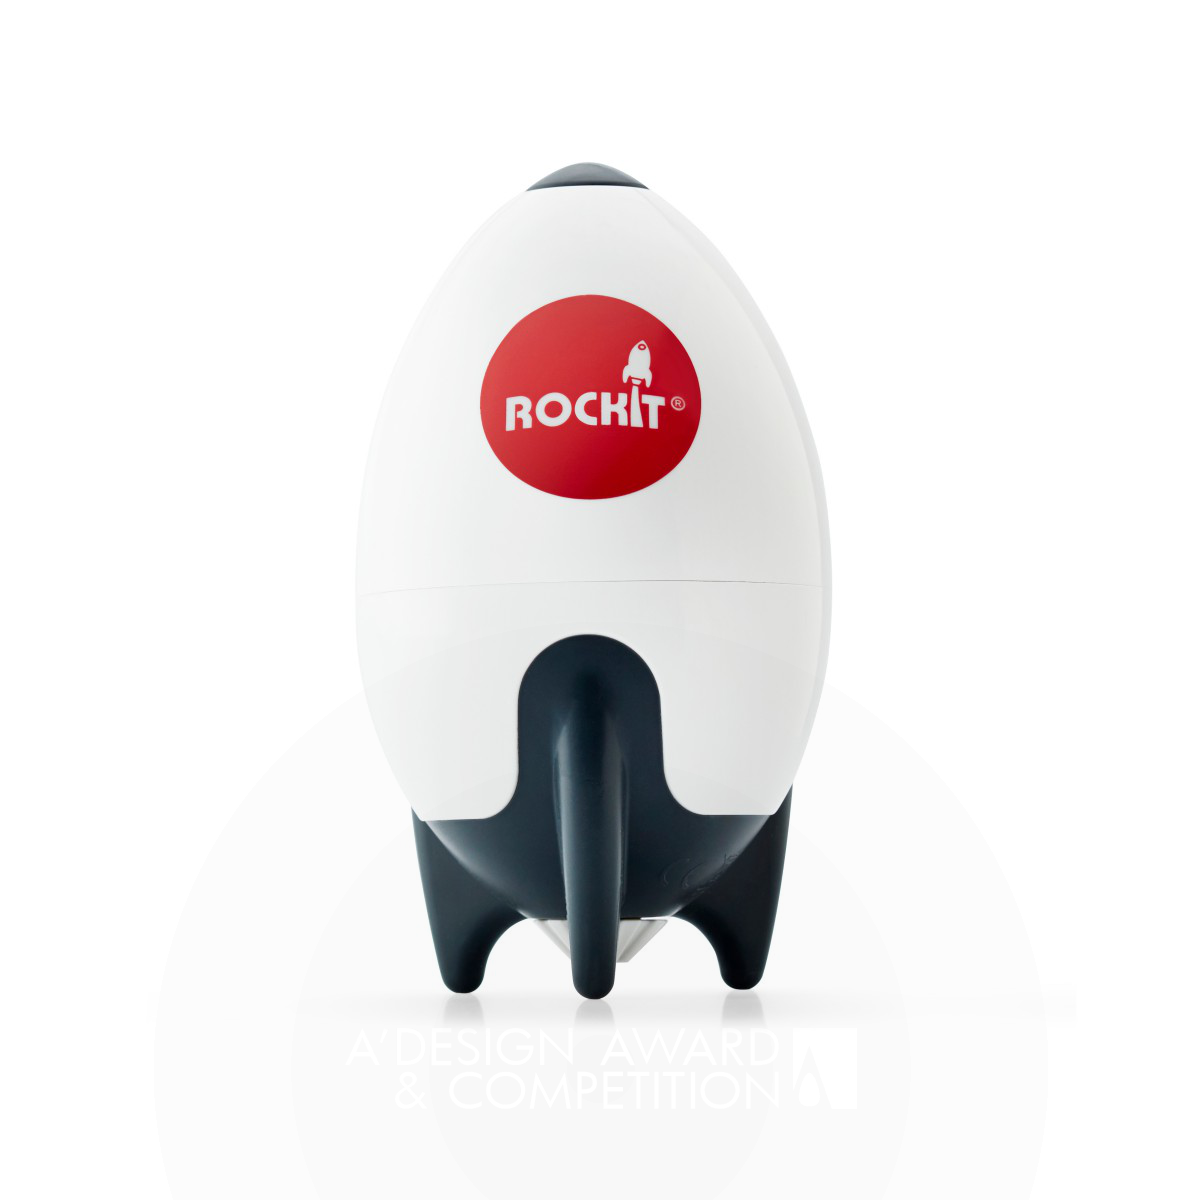 Rockit Stroller Rocker by Rockit Design Team